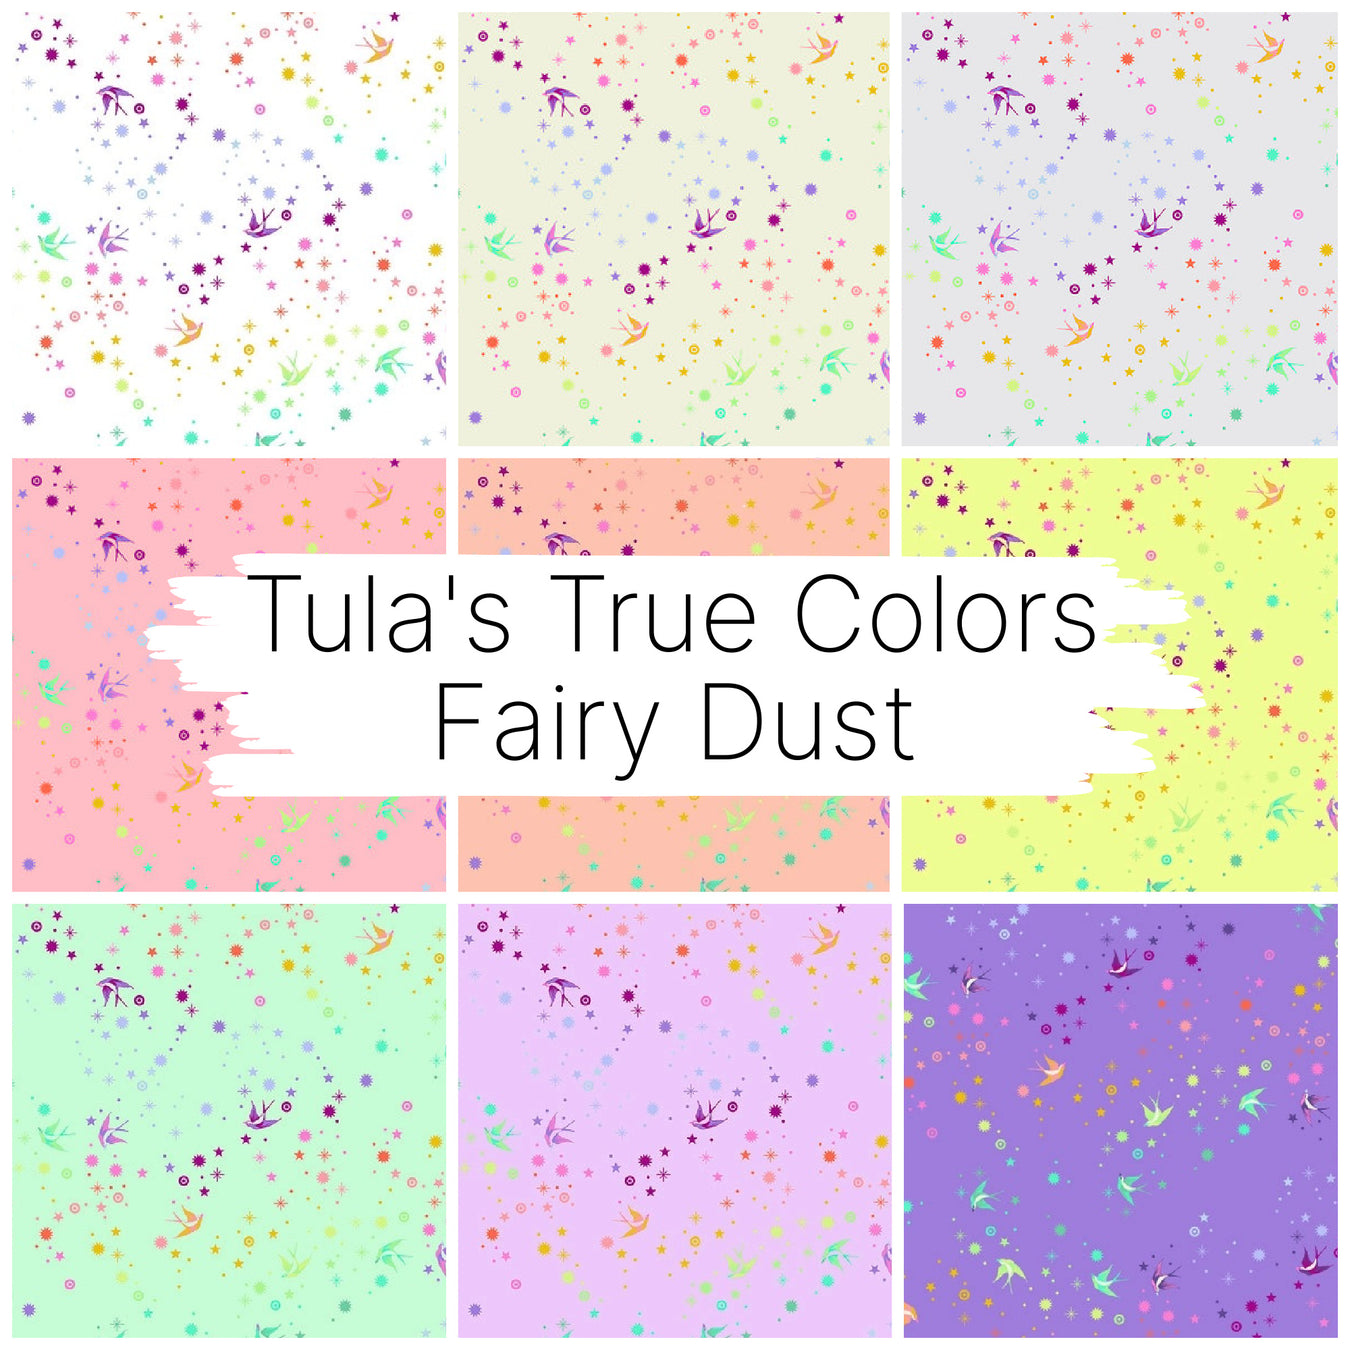 Tula's True Colors